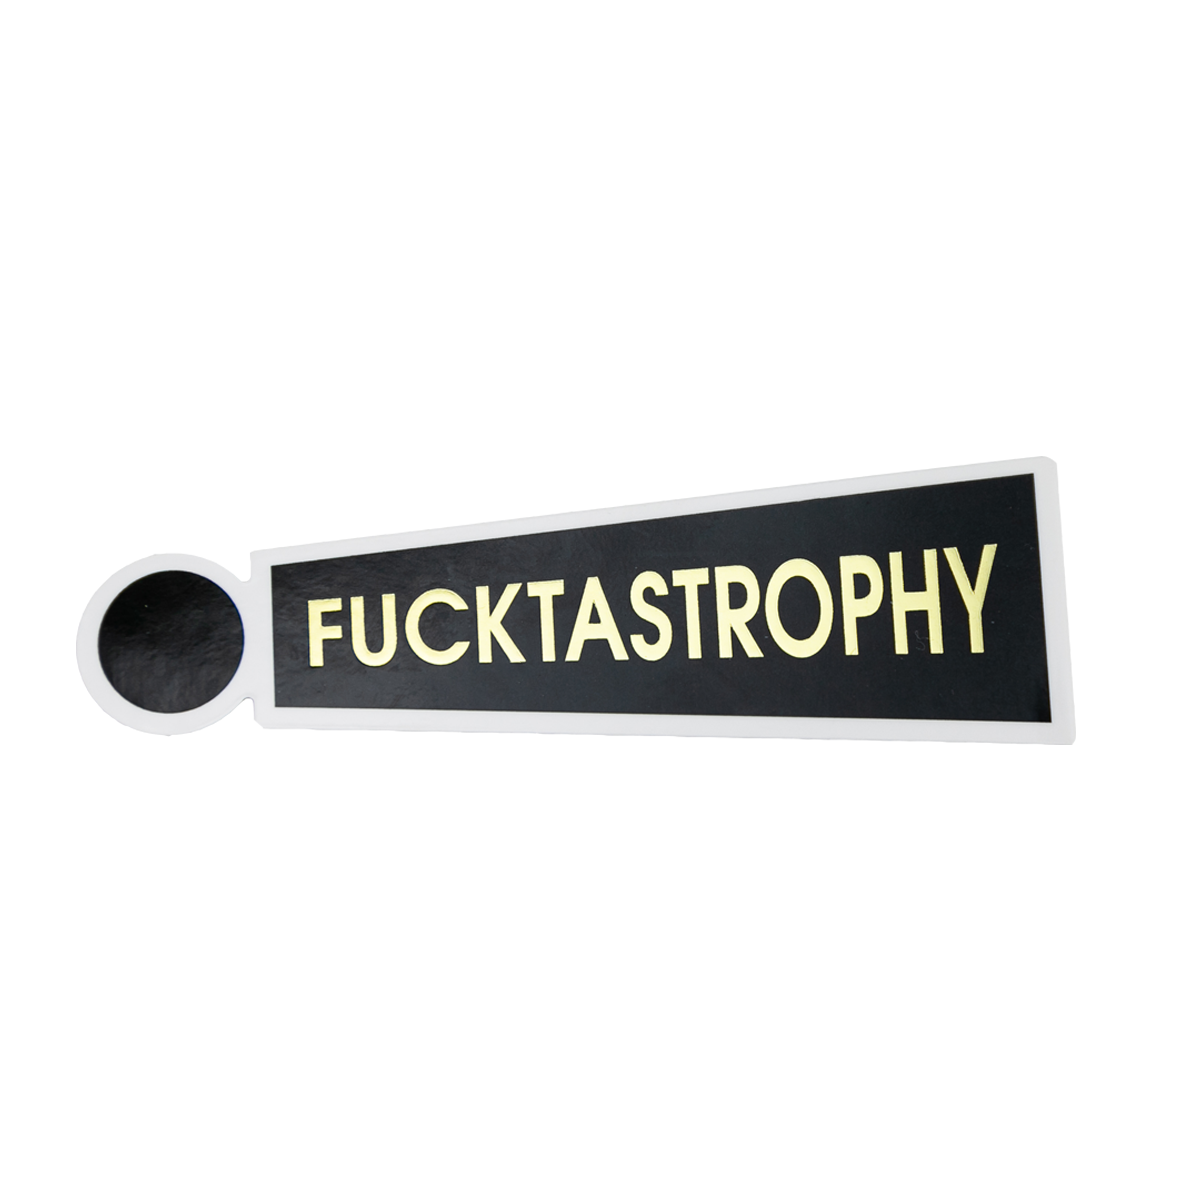 Fucktastrophy - Vinyl Sticker